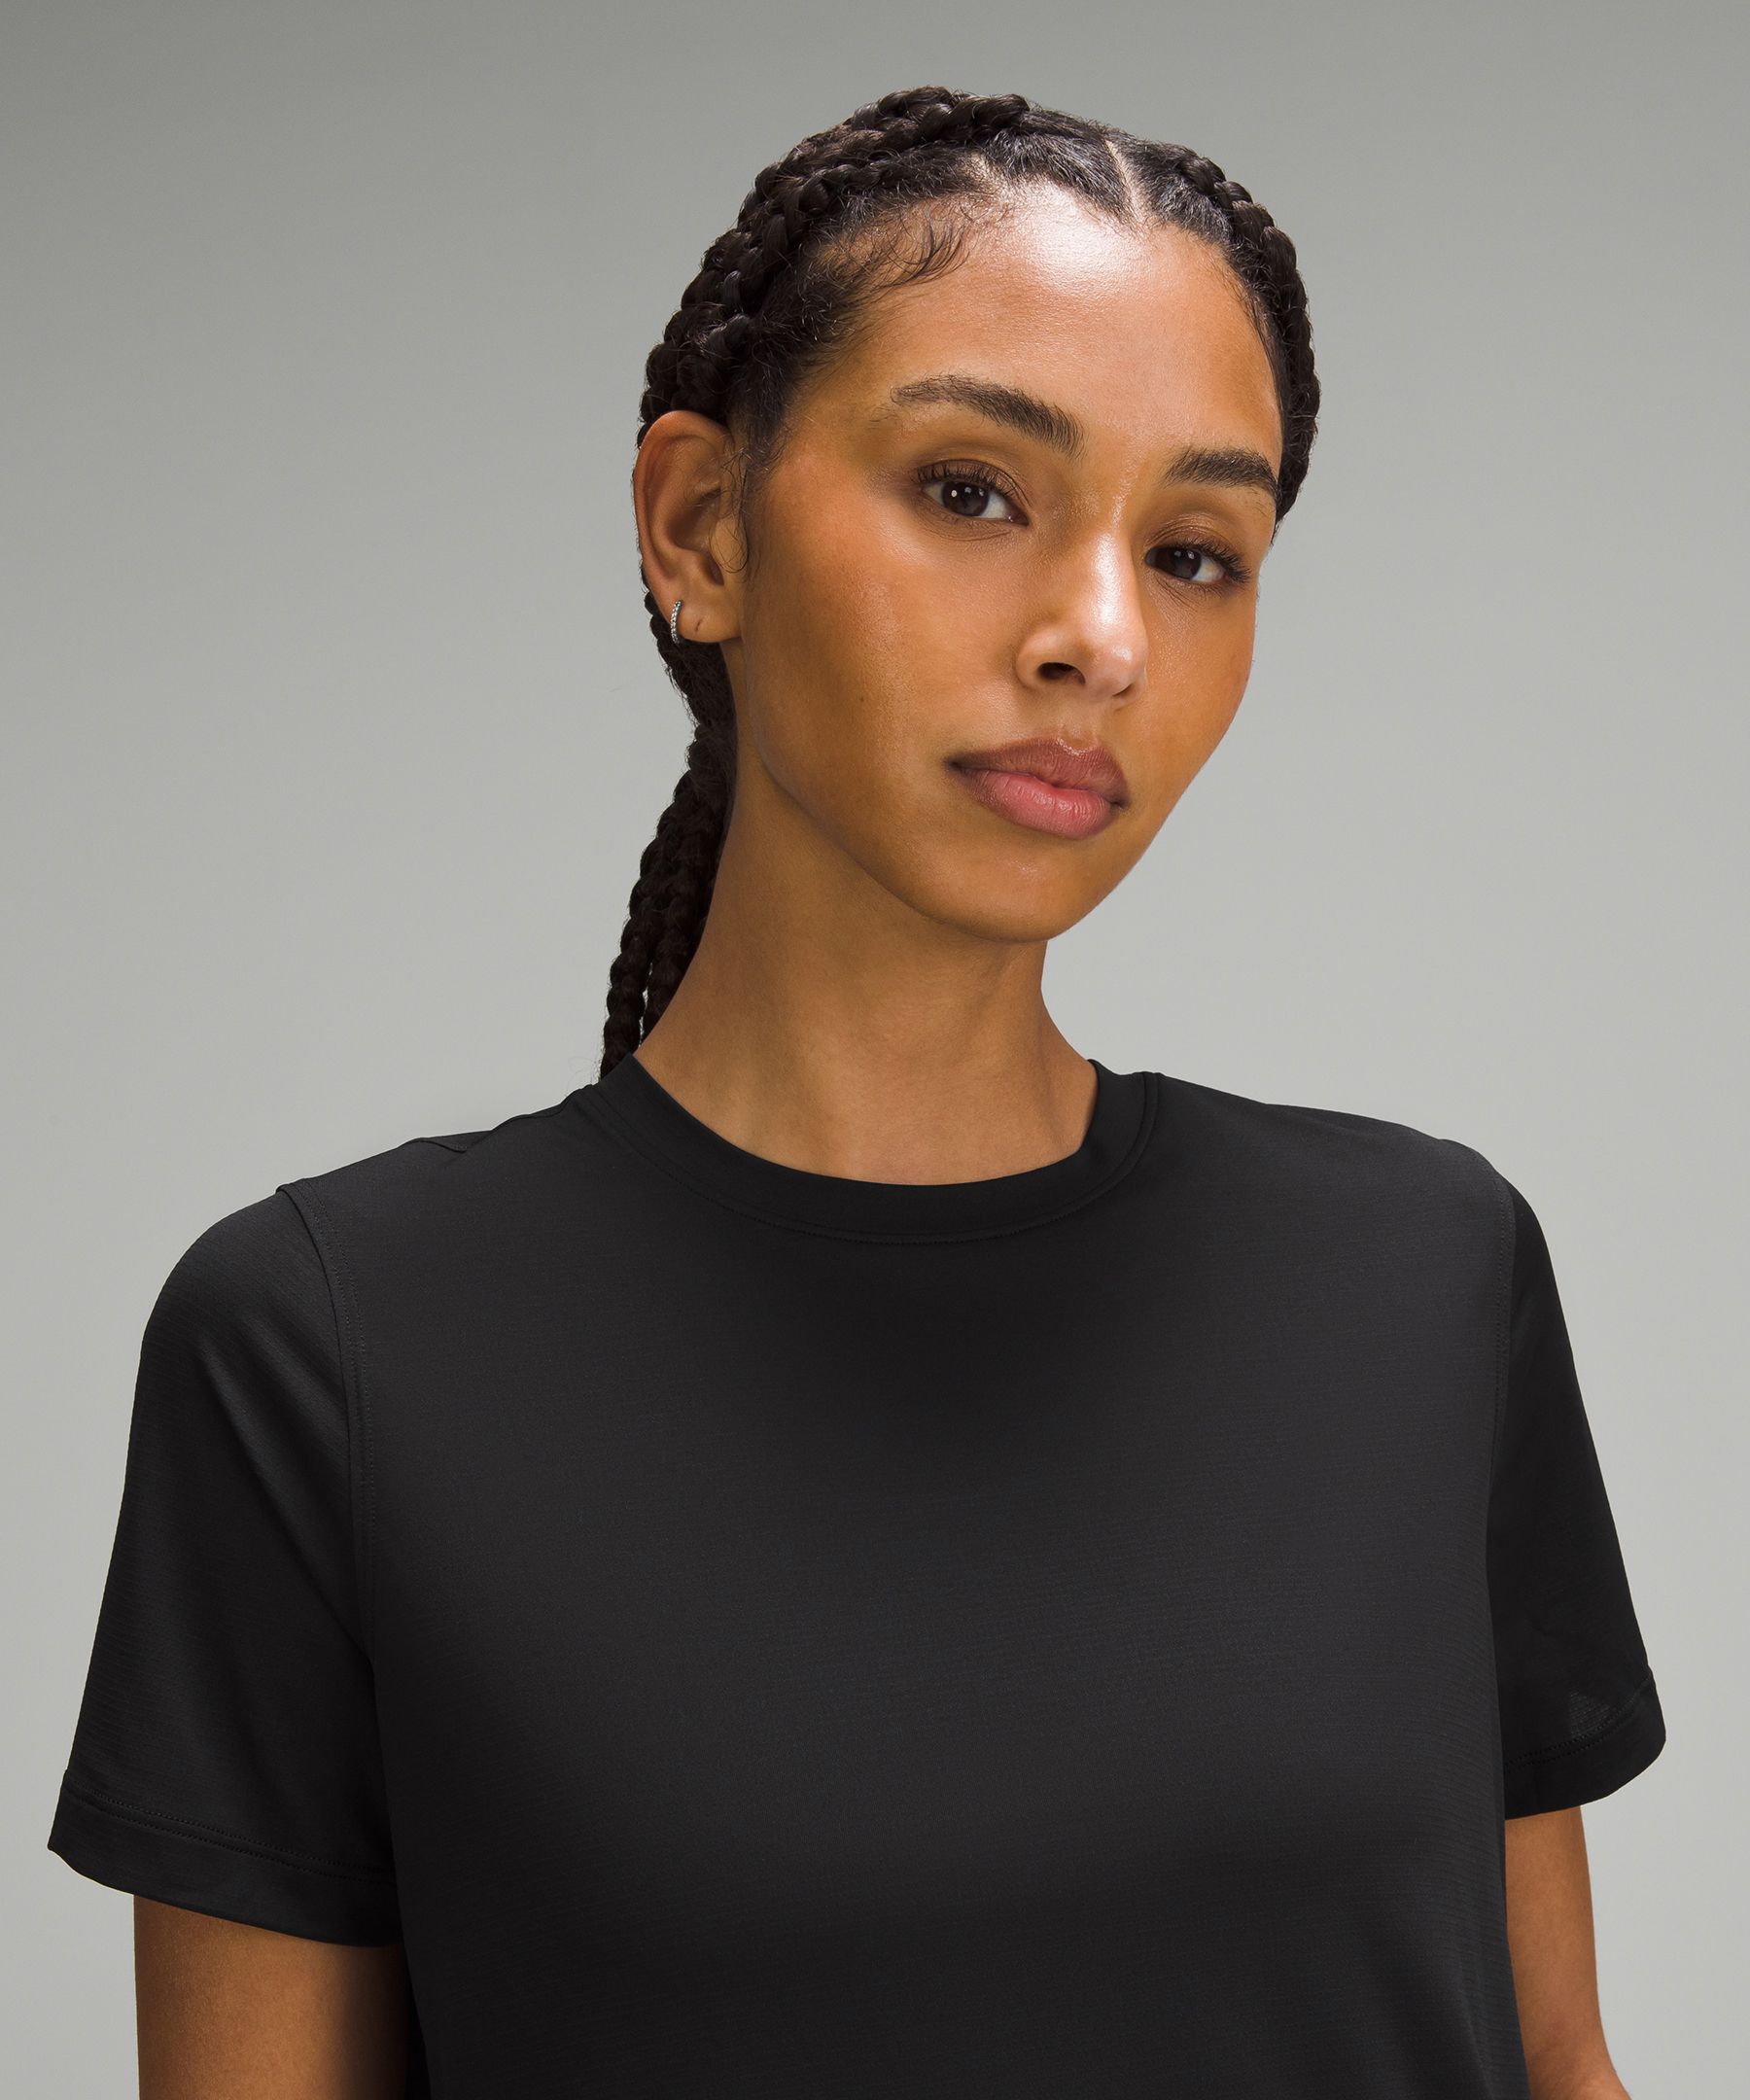 Ultralight Hip-Length T-Shirt | Women's Short Sleeve Shirts & Tee's